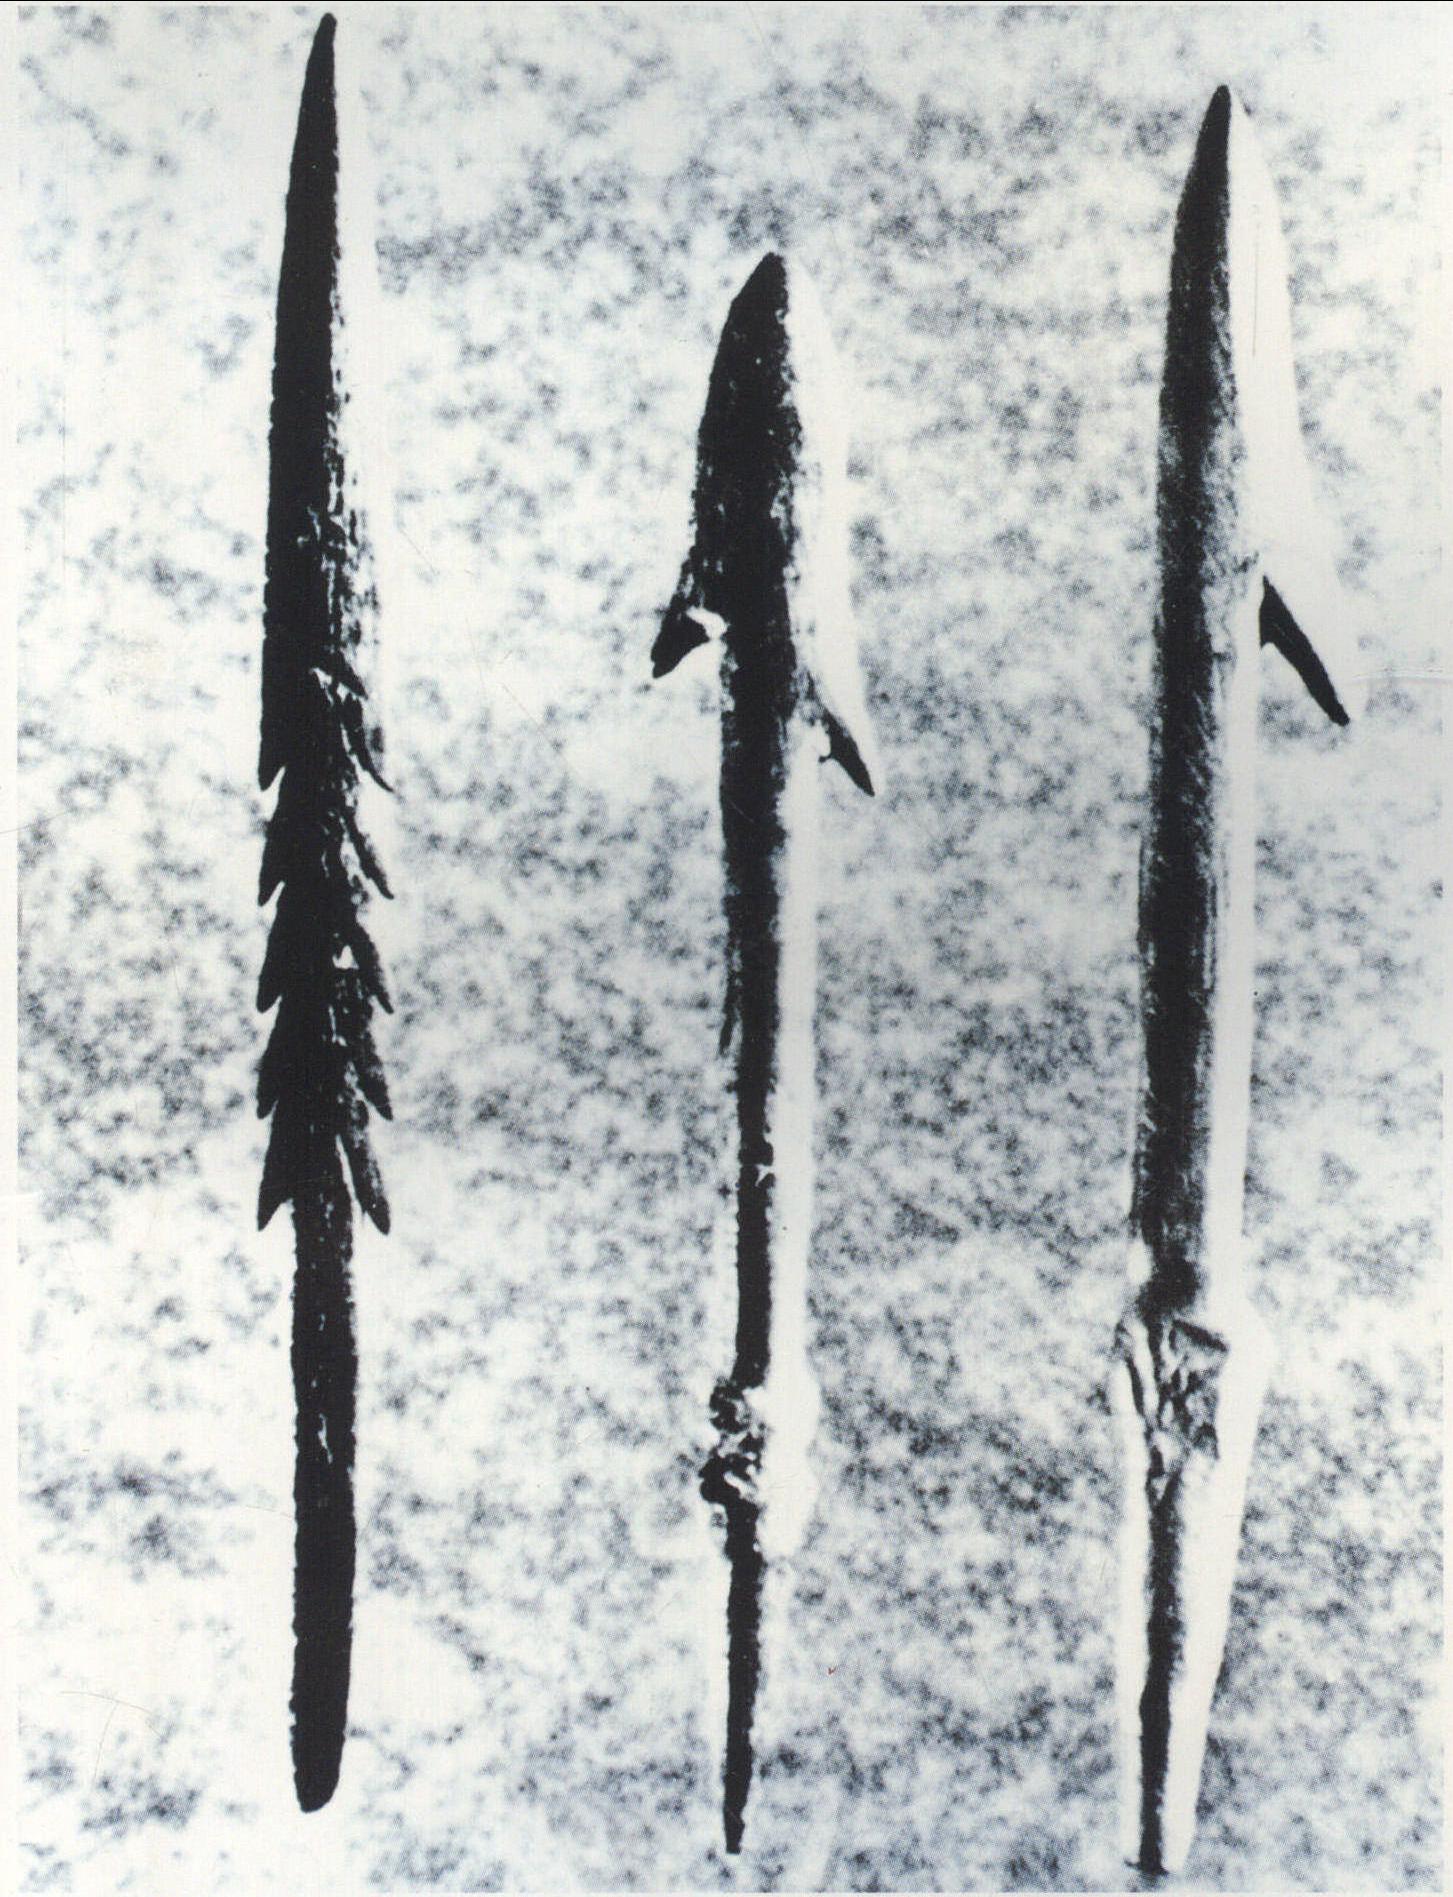 新石器时代骨鱼镖，捕鱼工具，刺杀、投掷兵器。左: 山西繁峙出土； 中: 西安半坡出土； 右: 江苏吴江梅堰出土